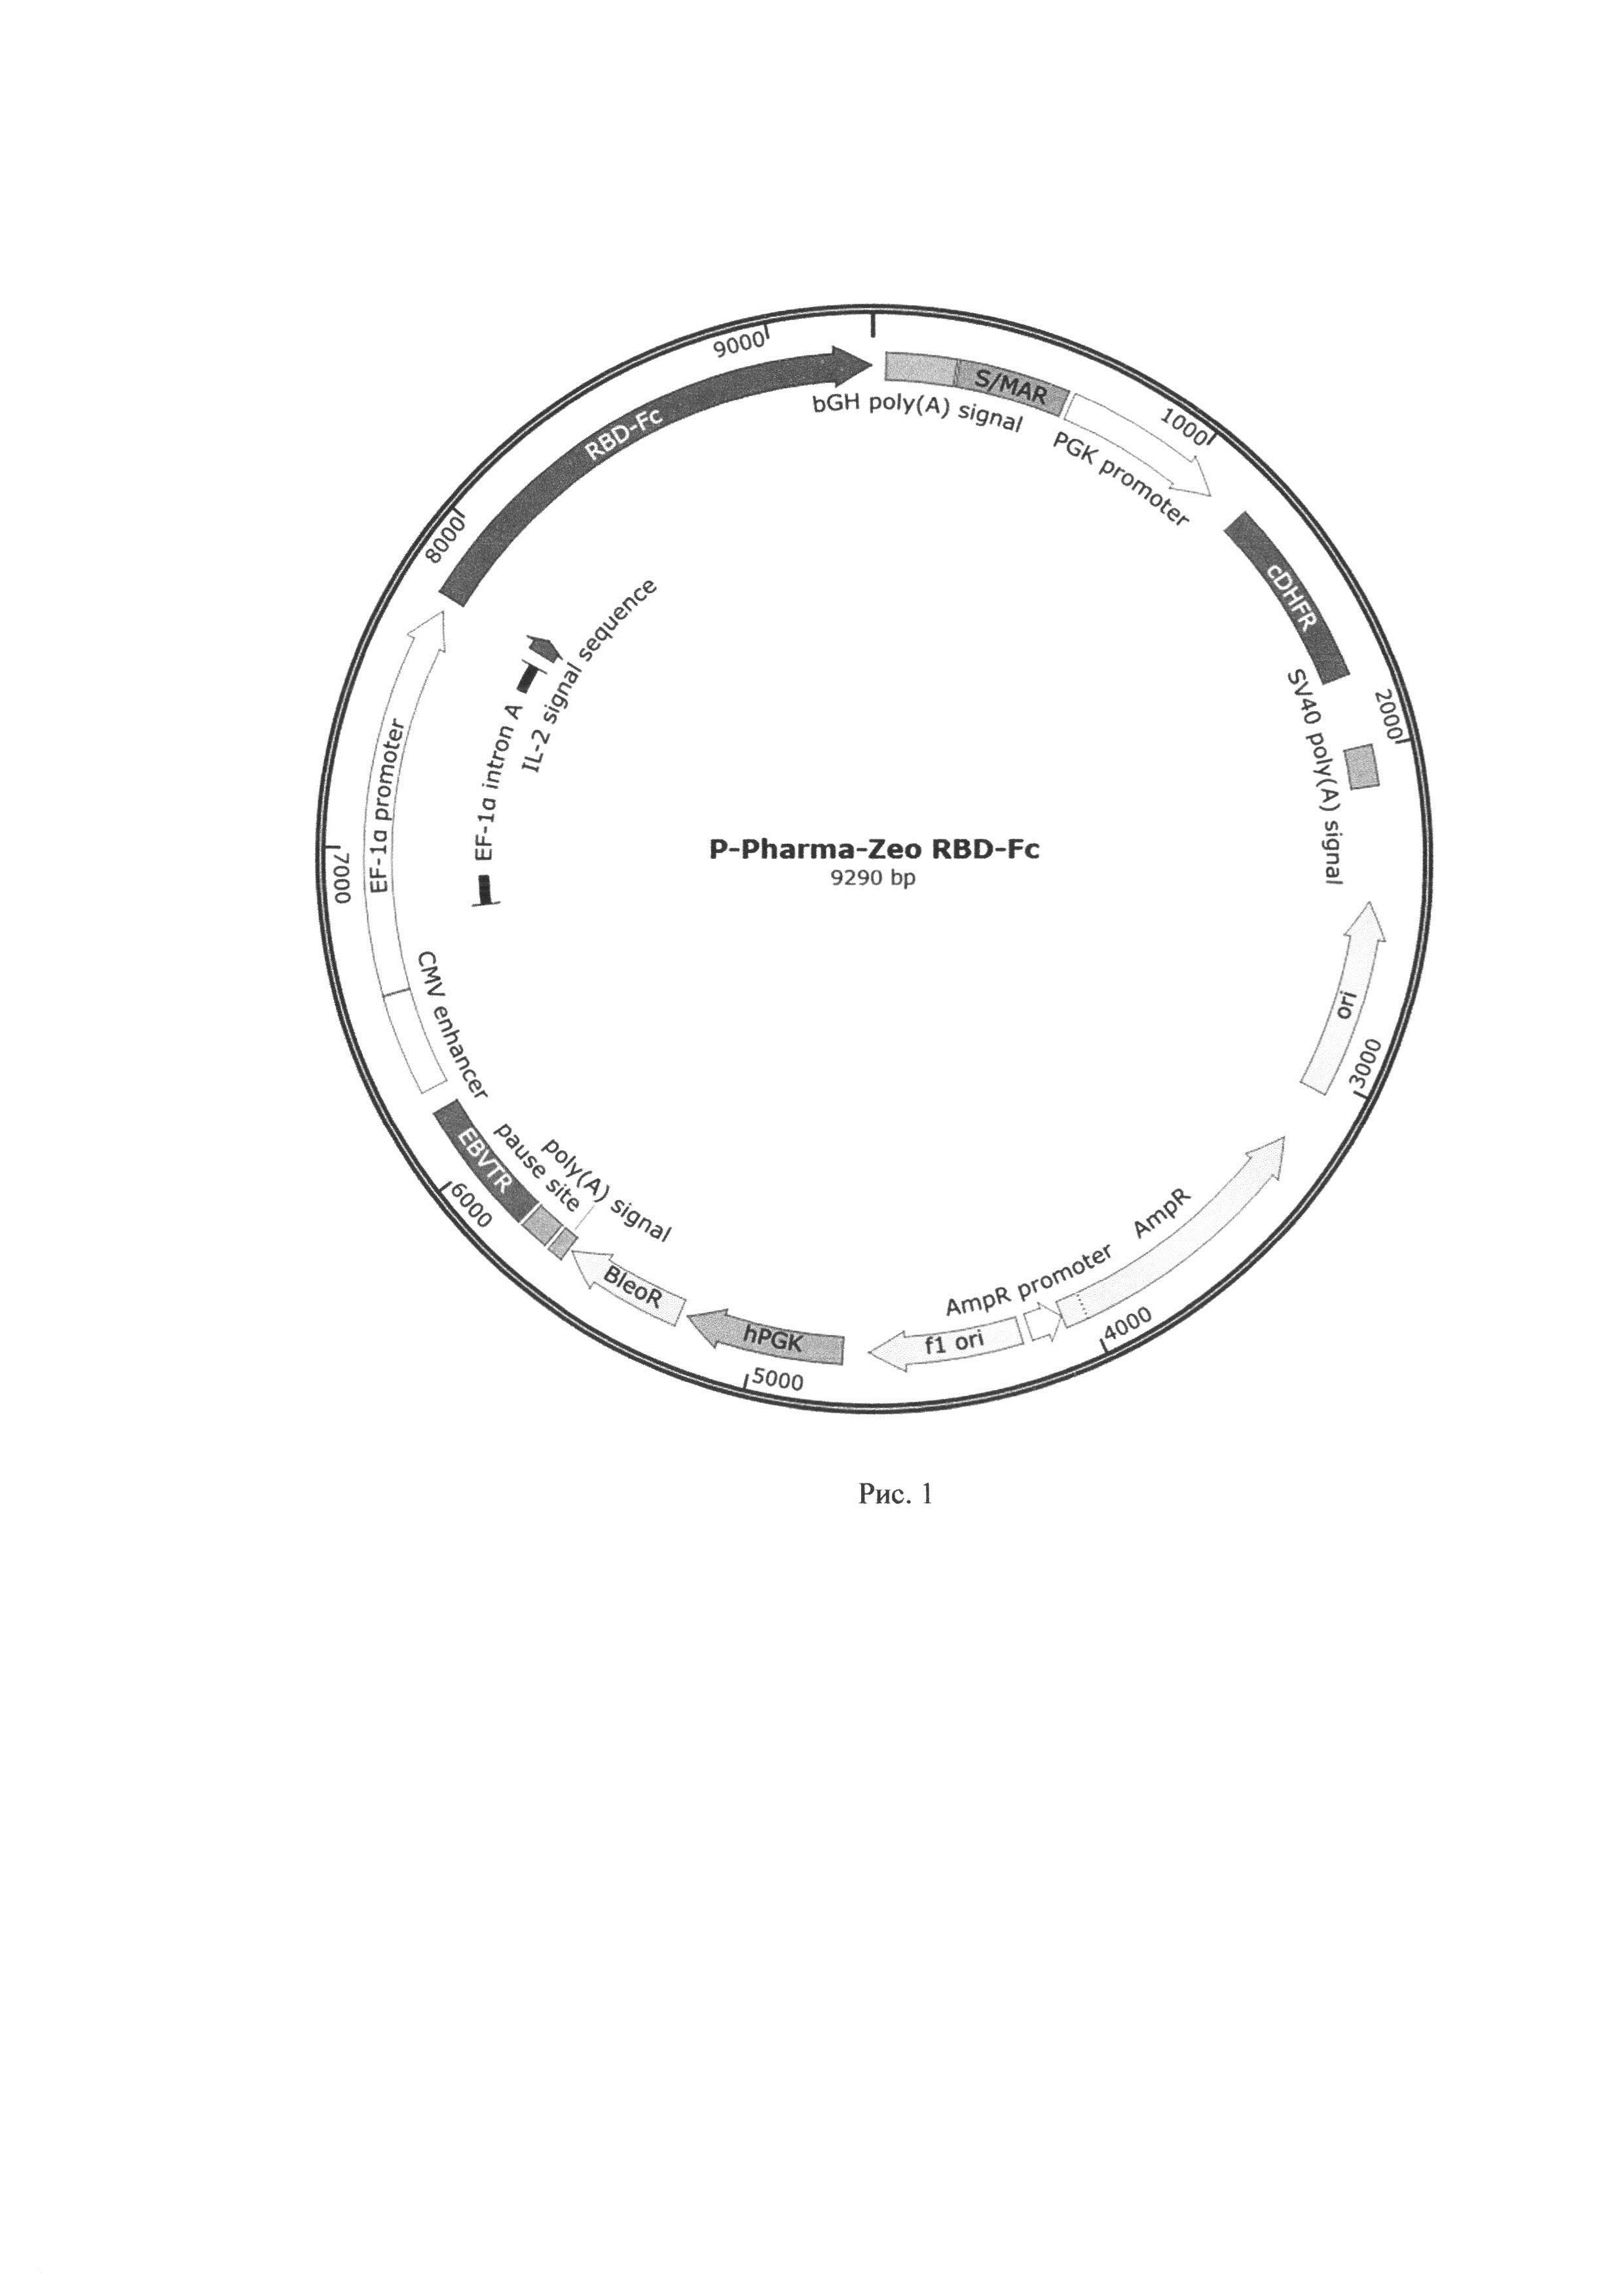 Гибридный ген, состоящий из рецептора RBD поверхностного белка S коронавируса SARS-CoV-2, эпитопов S14P5 и S21P2, Fc-фрагмента, для получения рекомбинантного антигена и его применения в составе вакцинной композиции против коронавирусной инфекции